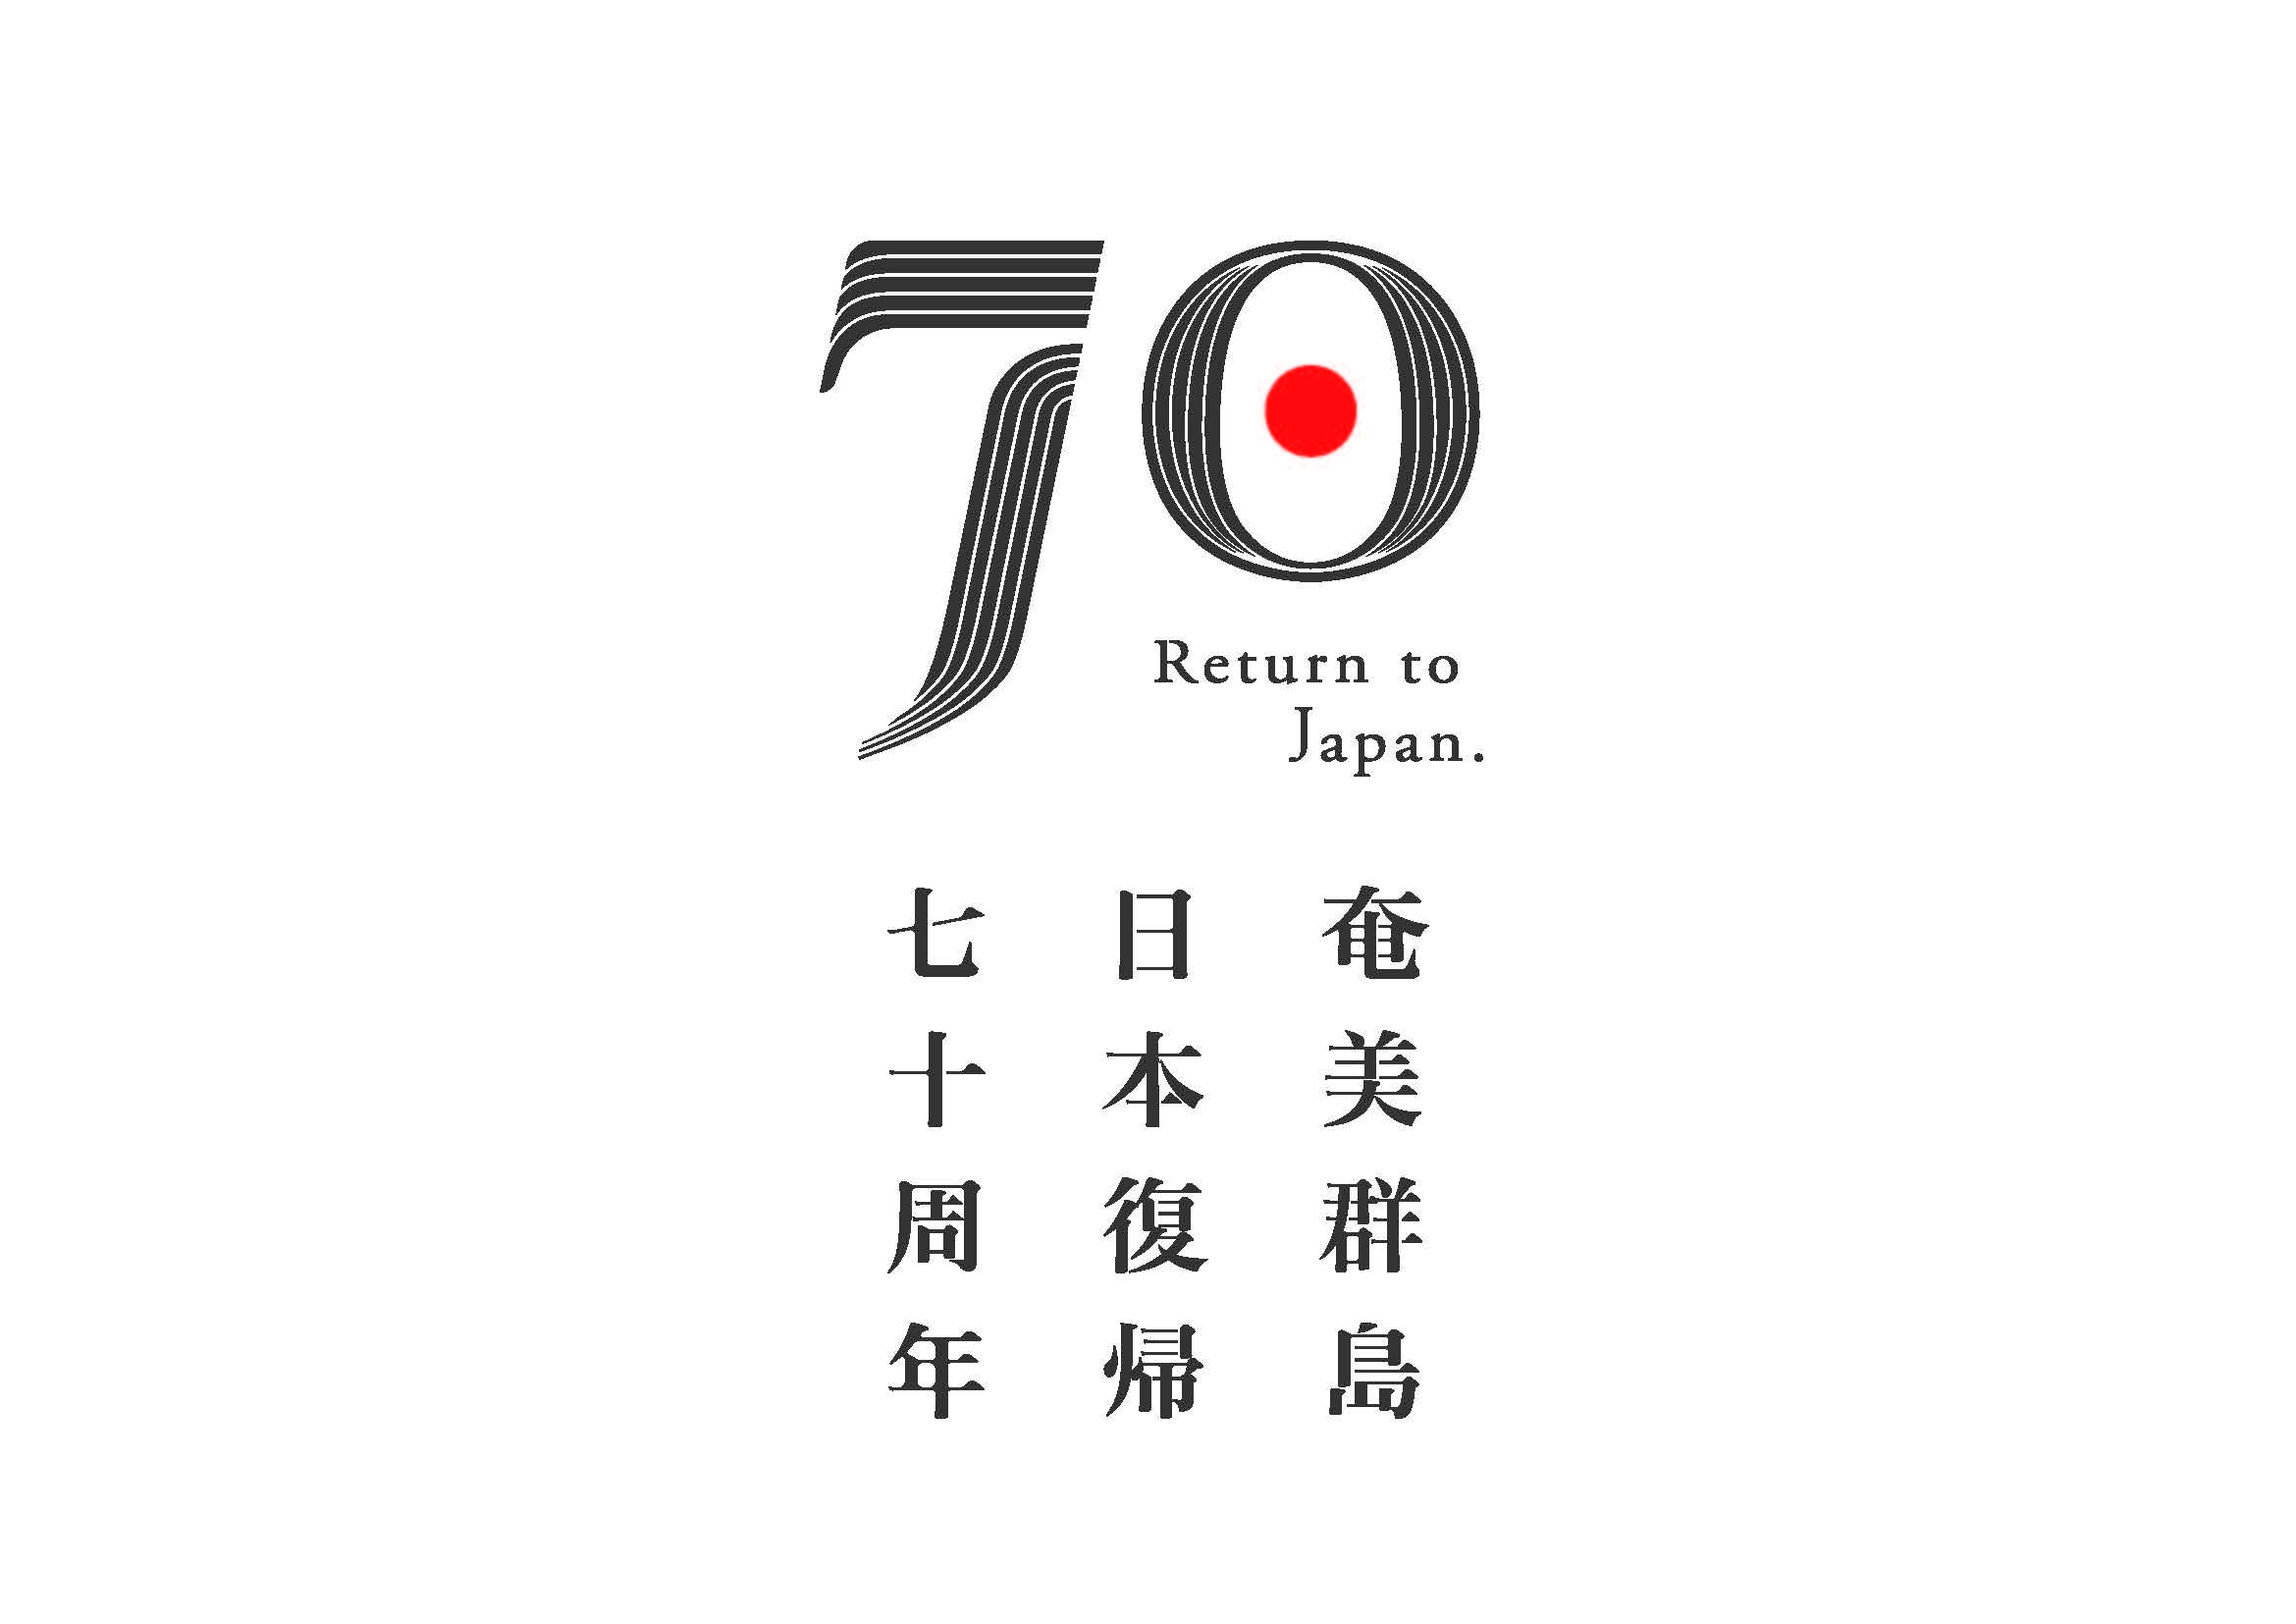 奄美群島日本復帰70周年ロゴマーク1.jpg